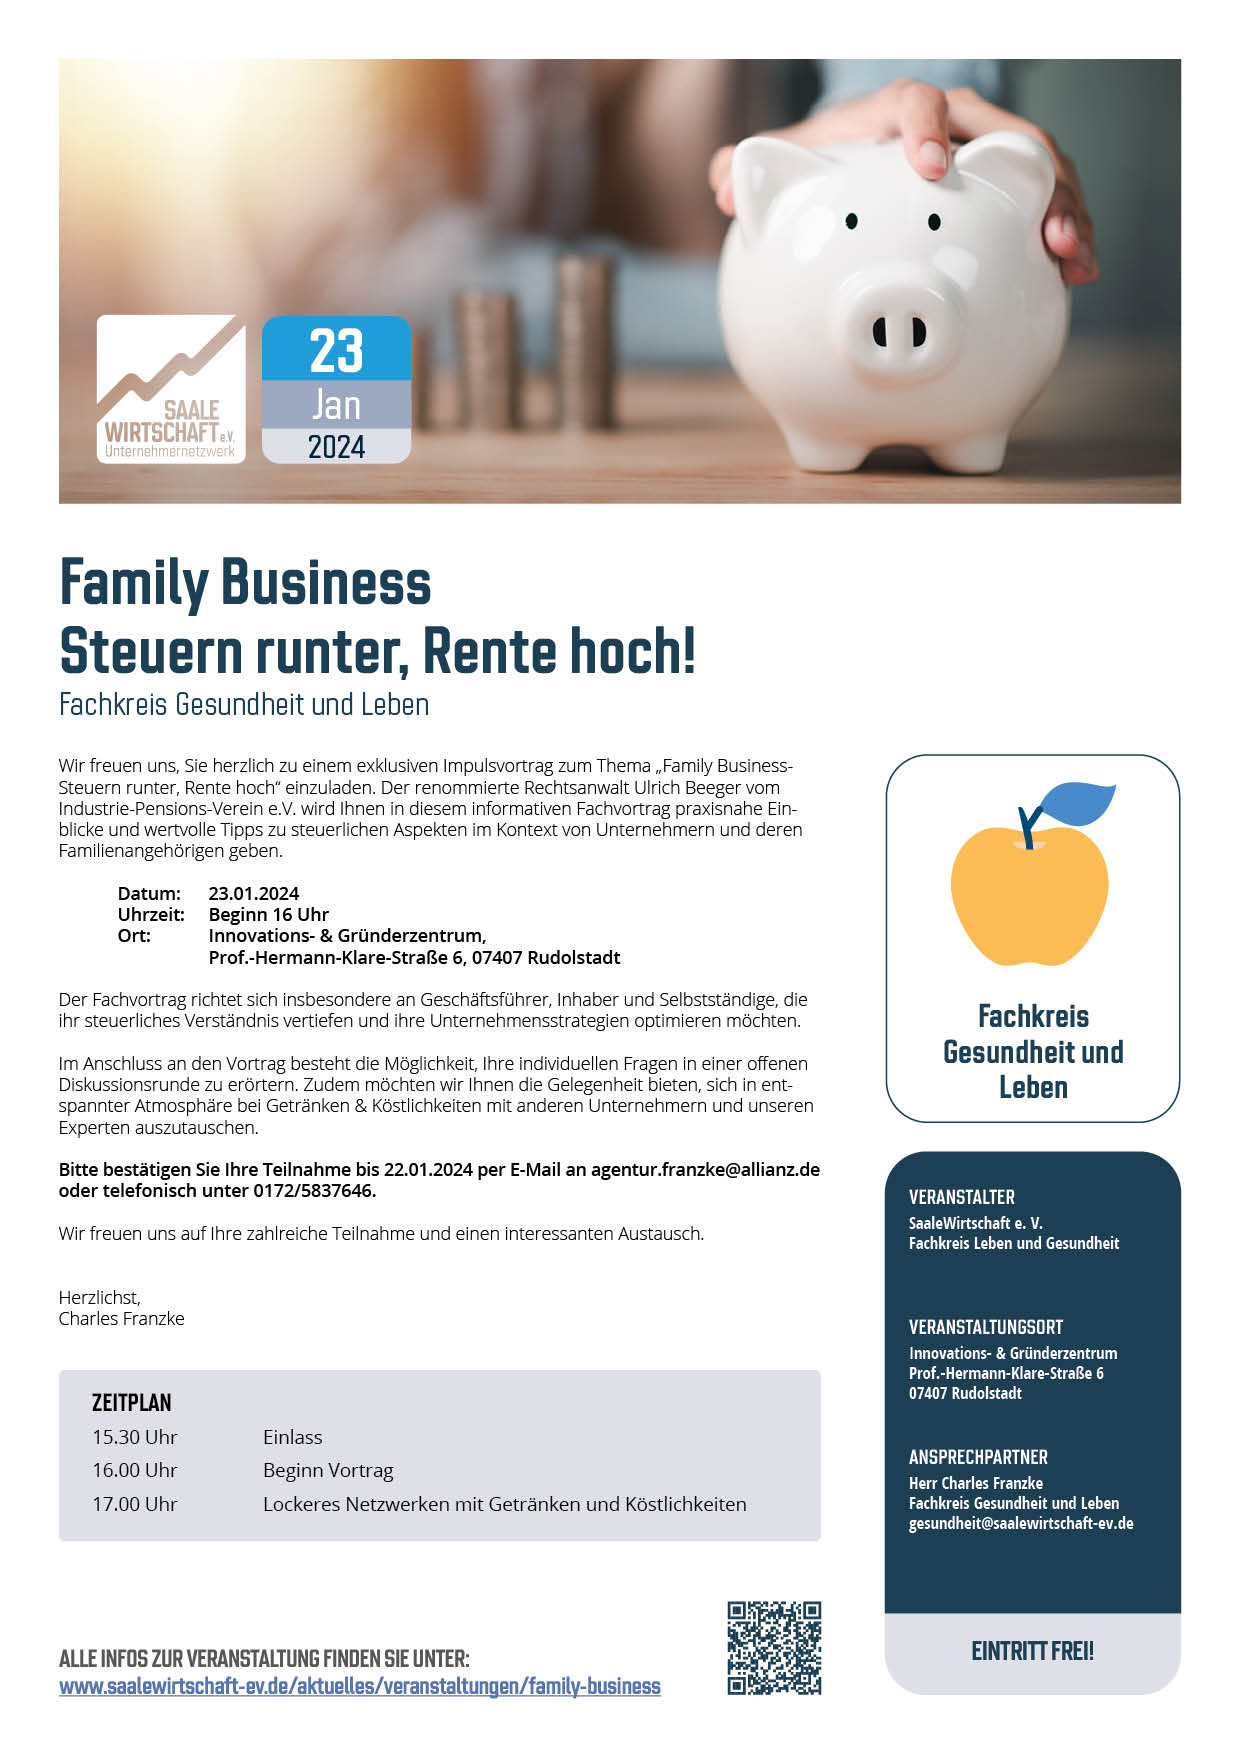 Veranstaltungsblatt "Family Business – Steuern runter, Rente hoch!"